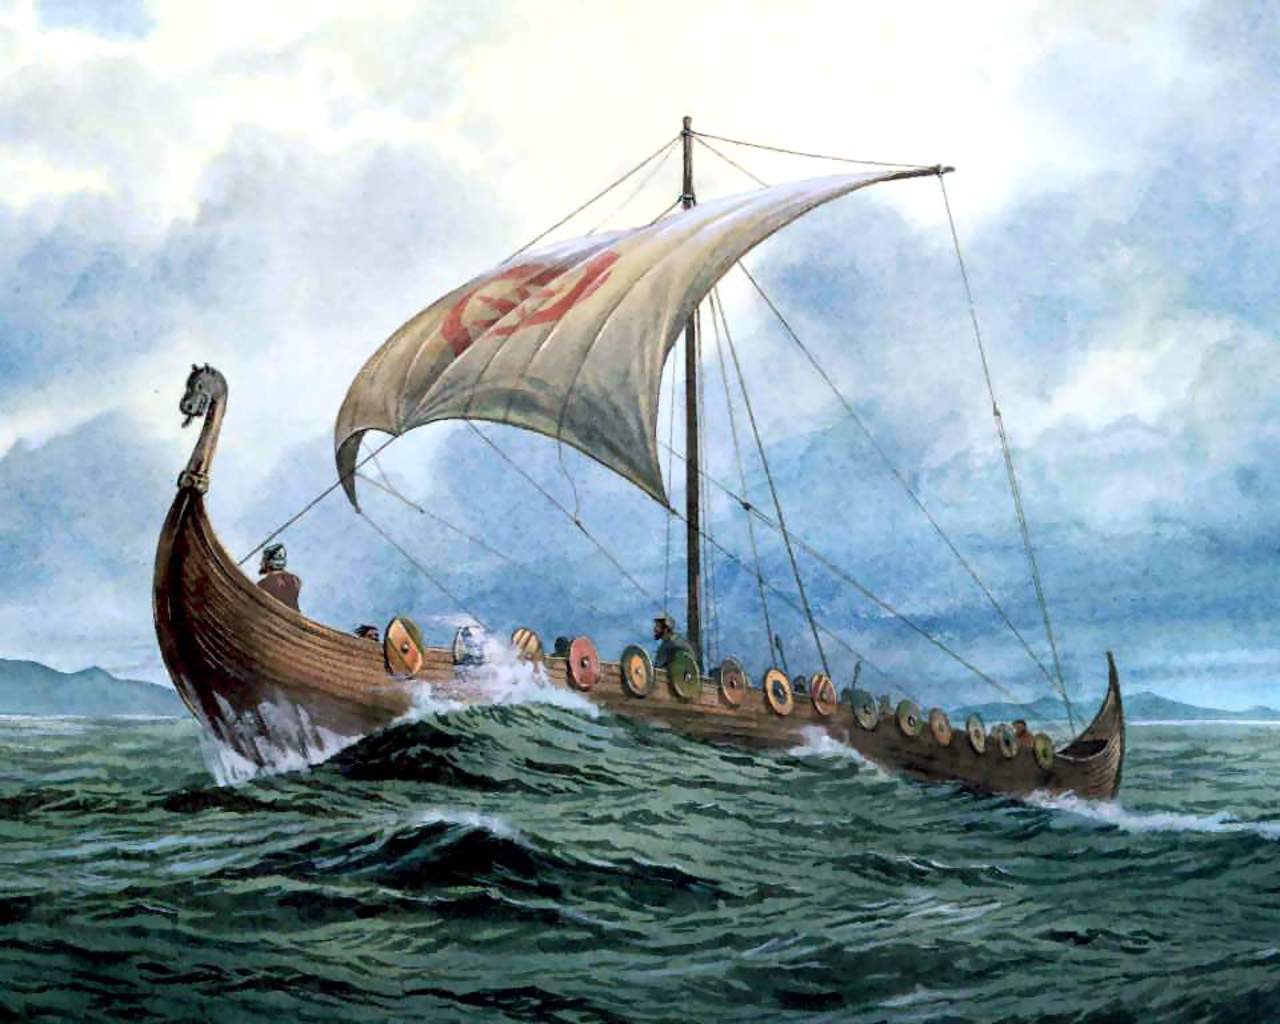 General 1280x1024 sailing ship artwork Vikings